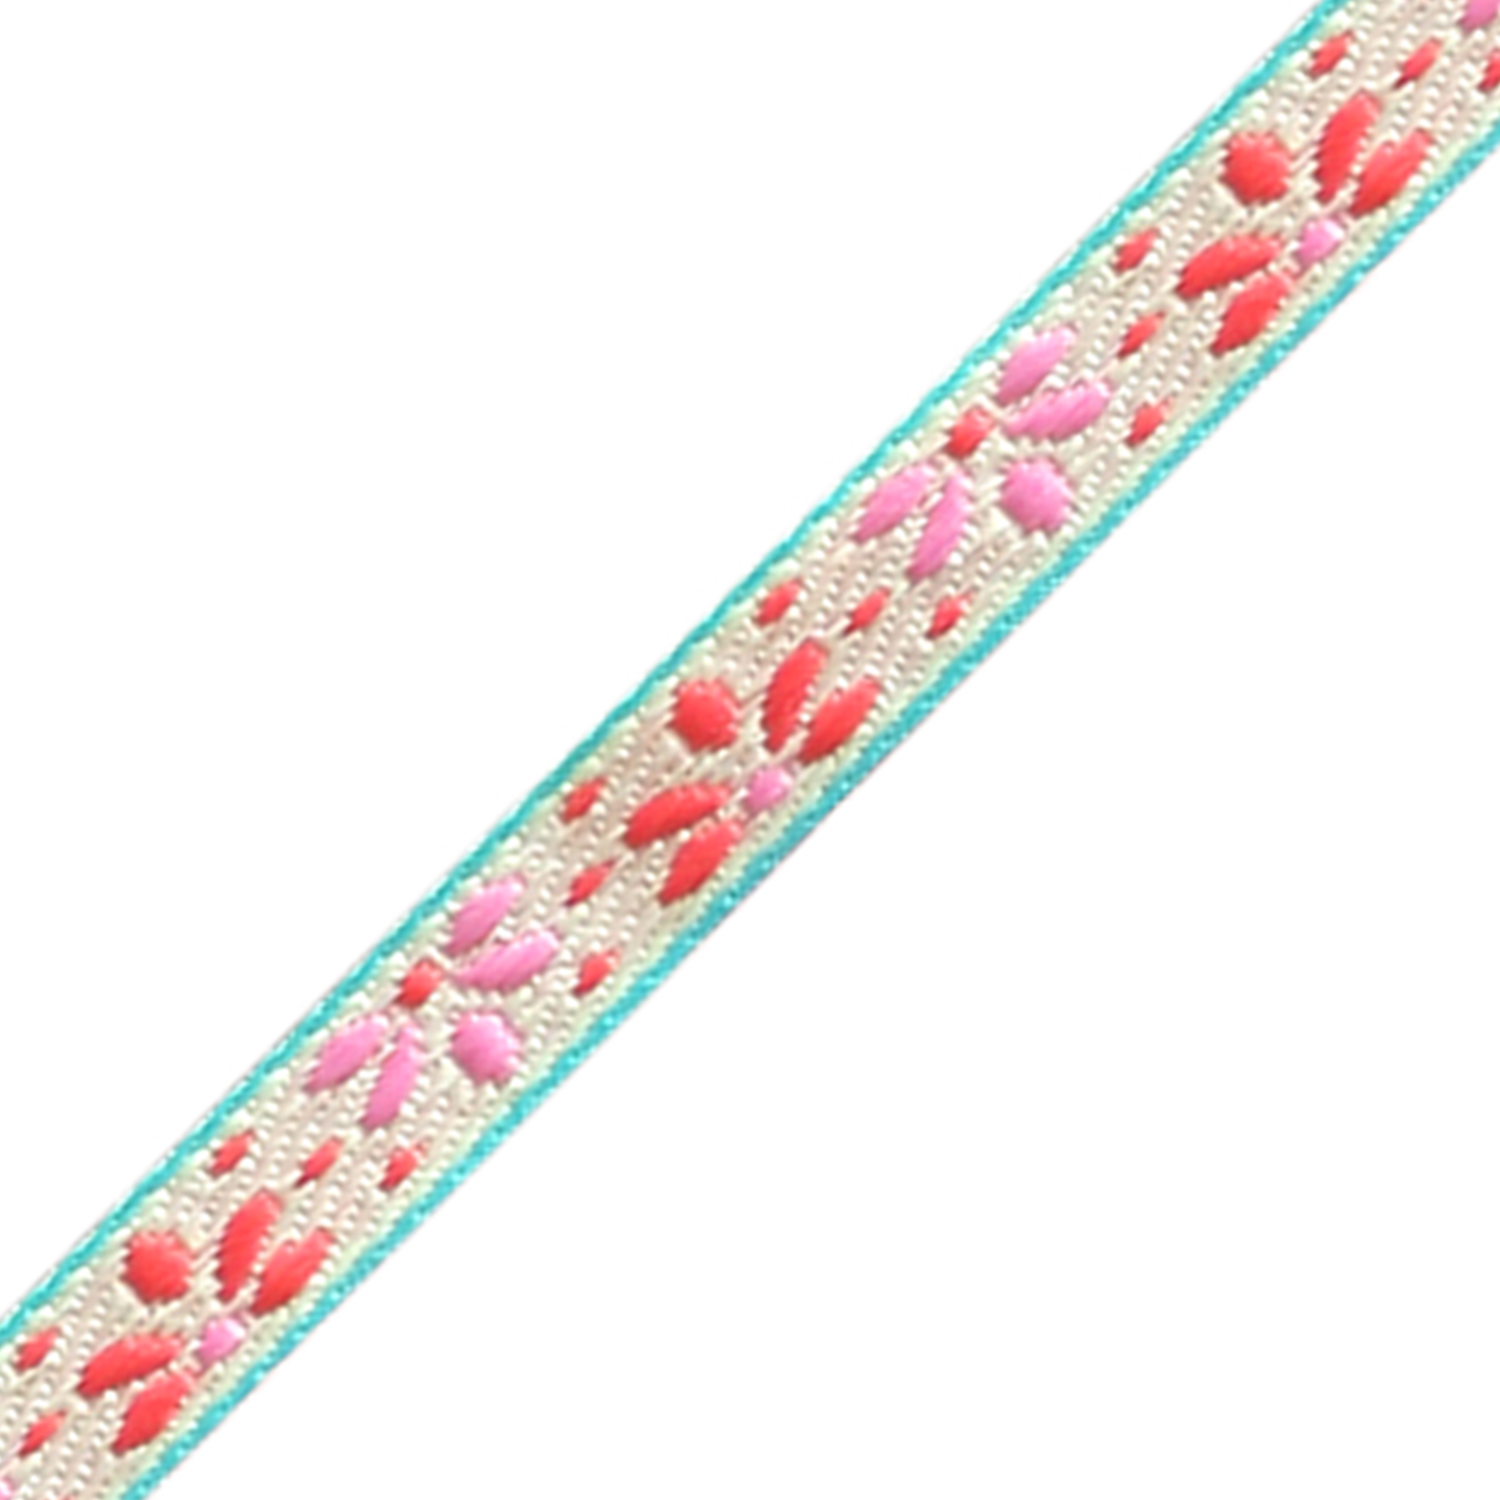 Festival lint – Pink flowers, 10mm, Creme/Roze, 1 m